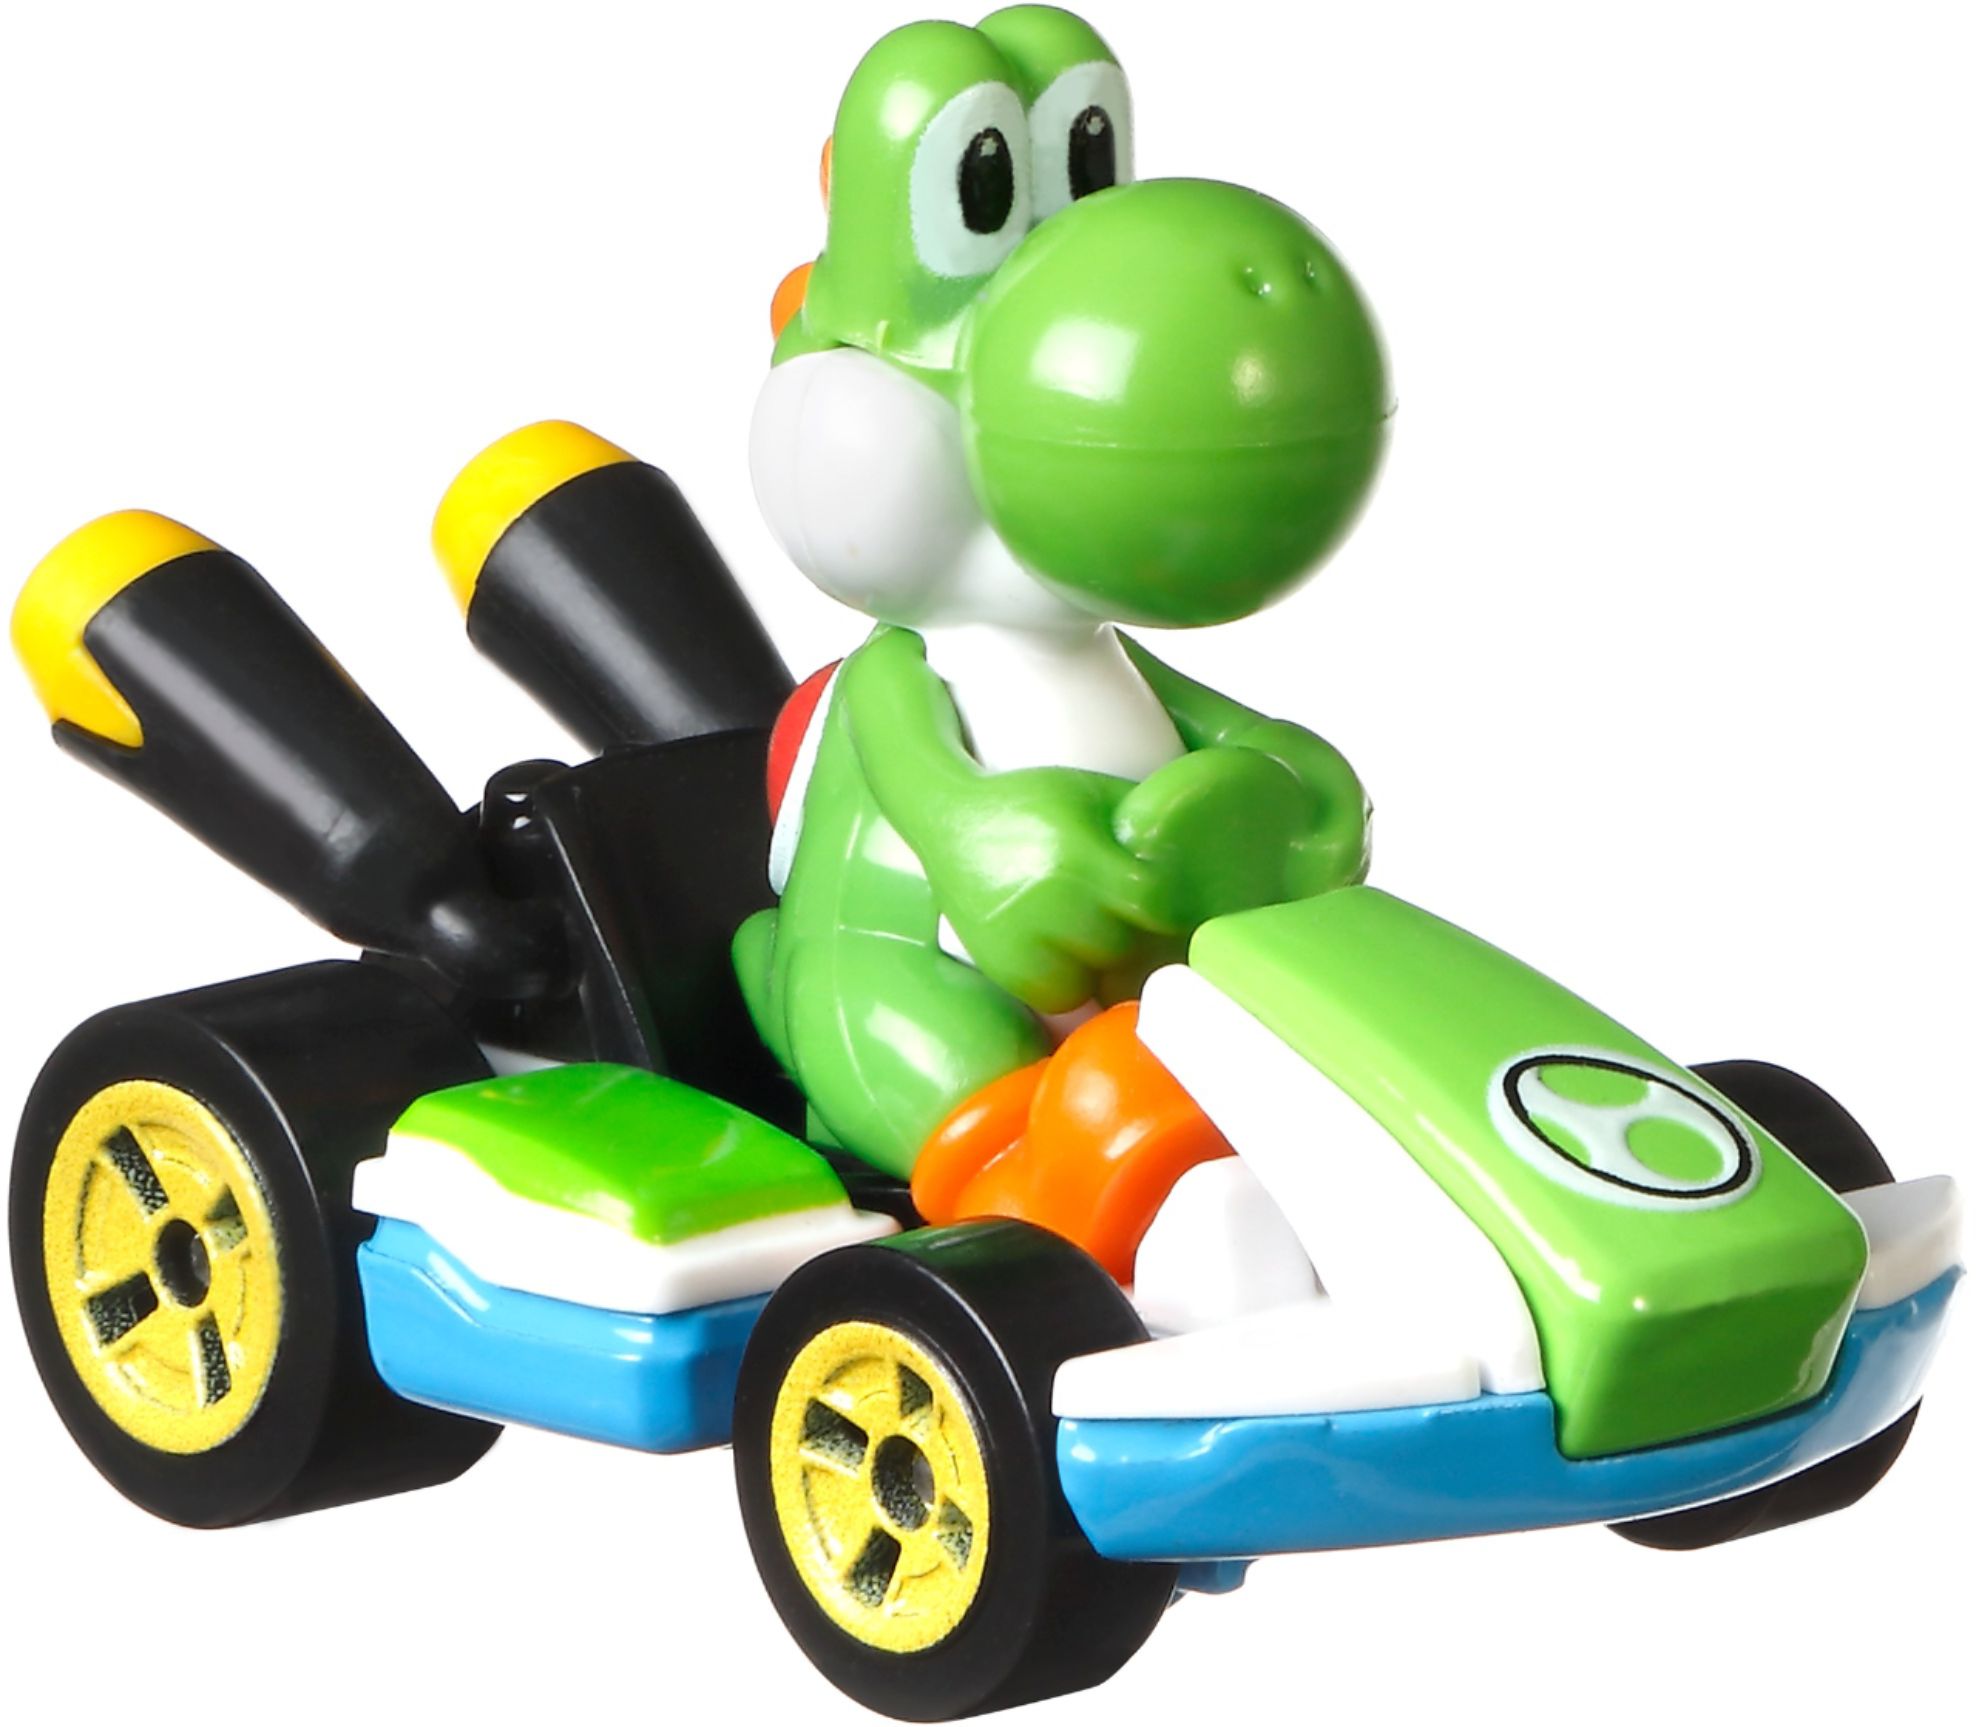 Mario Kart Hot Wheels Character Vehicle Styles May Vary GBG25